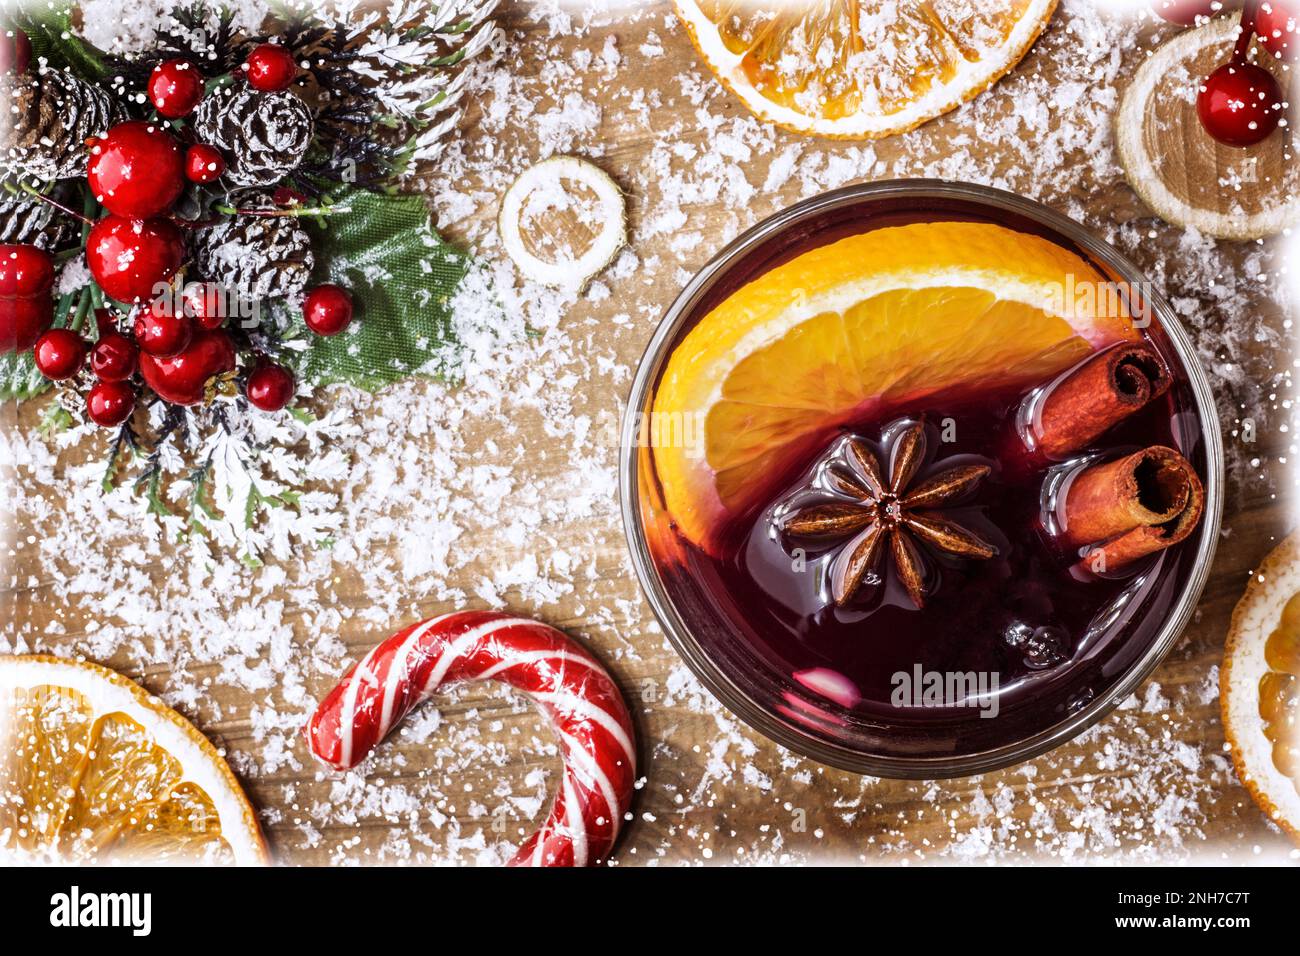 Noël chaud dans un verre, vin rouge avec épices et fruits oranges sur une table rustique en bois avec branches de sapin nouvel an. Noël traditionnel chaud dr Banque D'Images